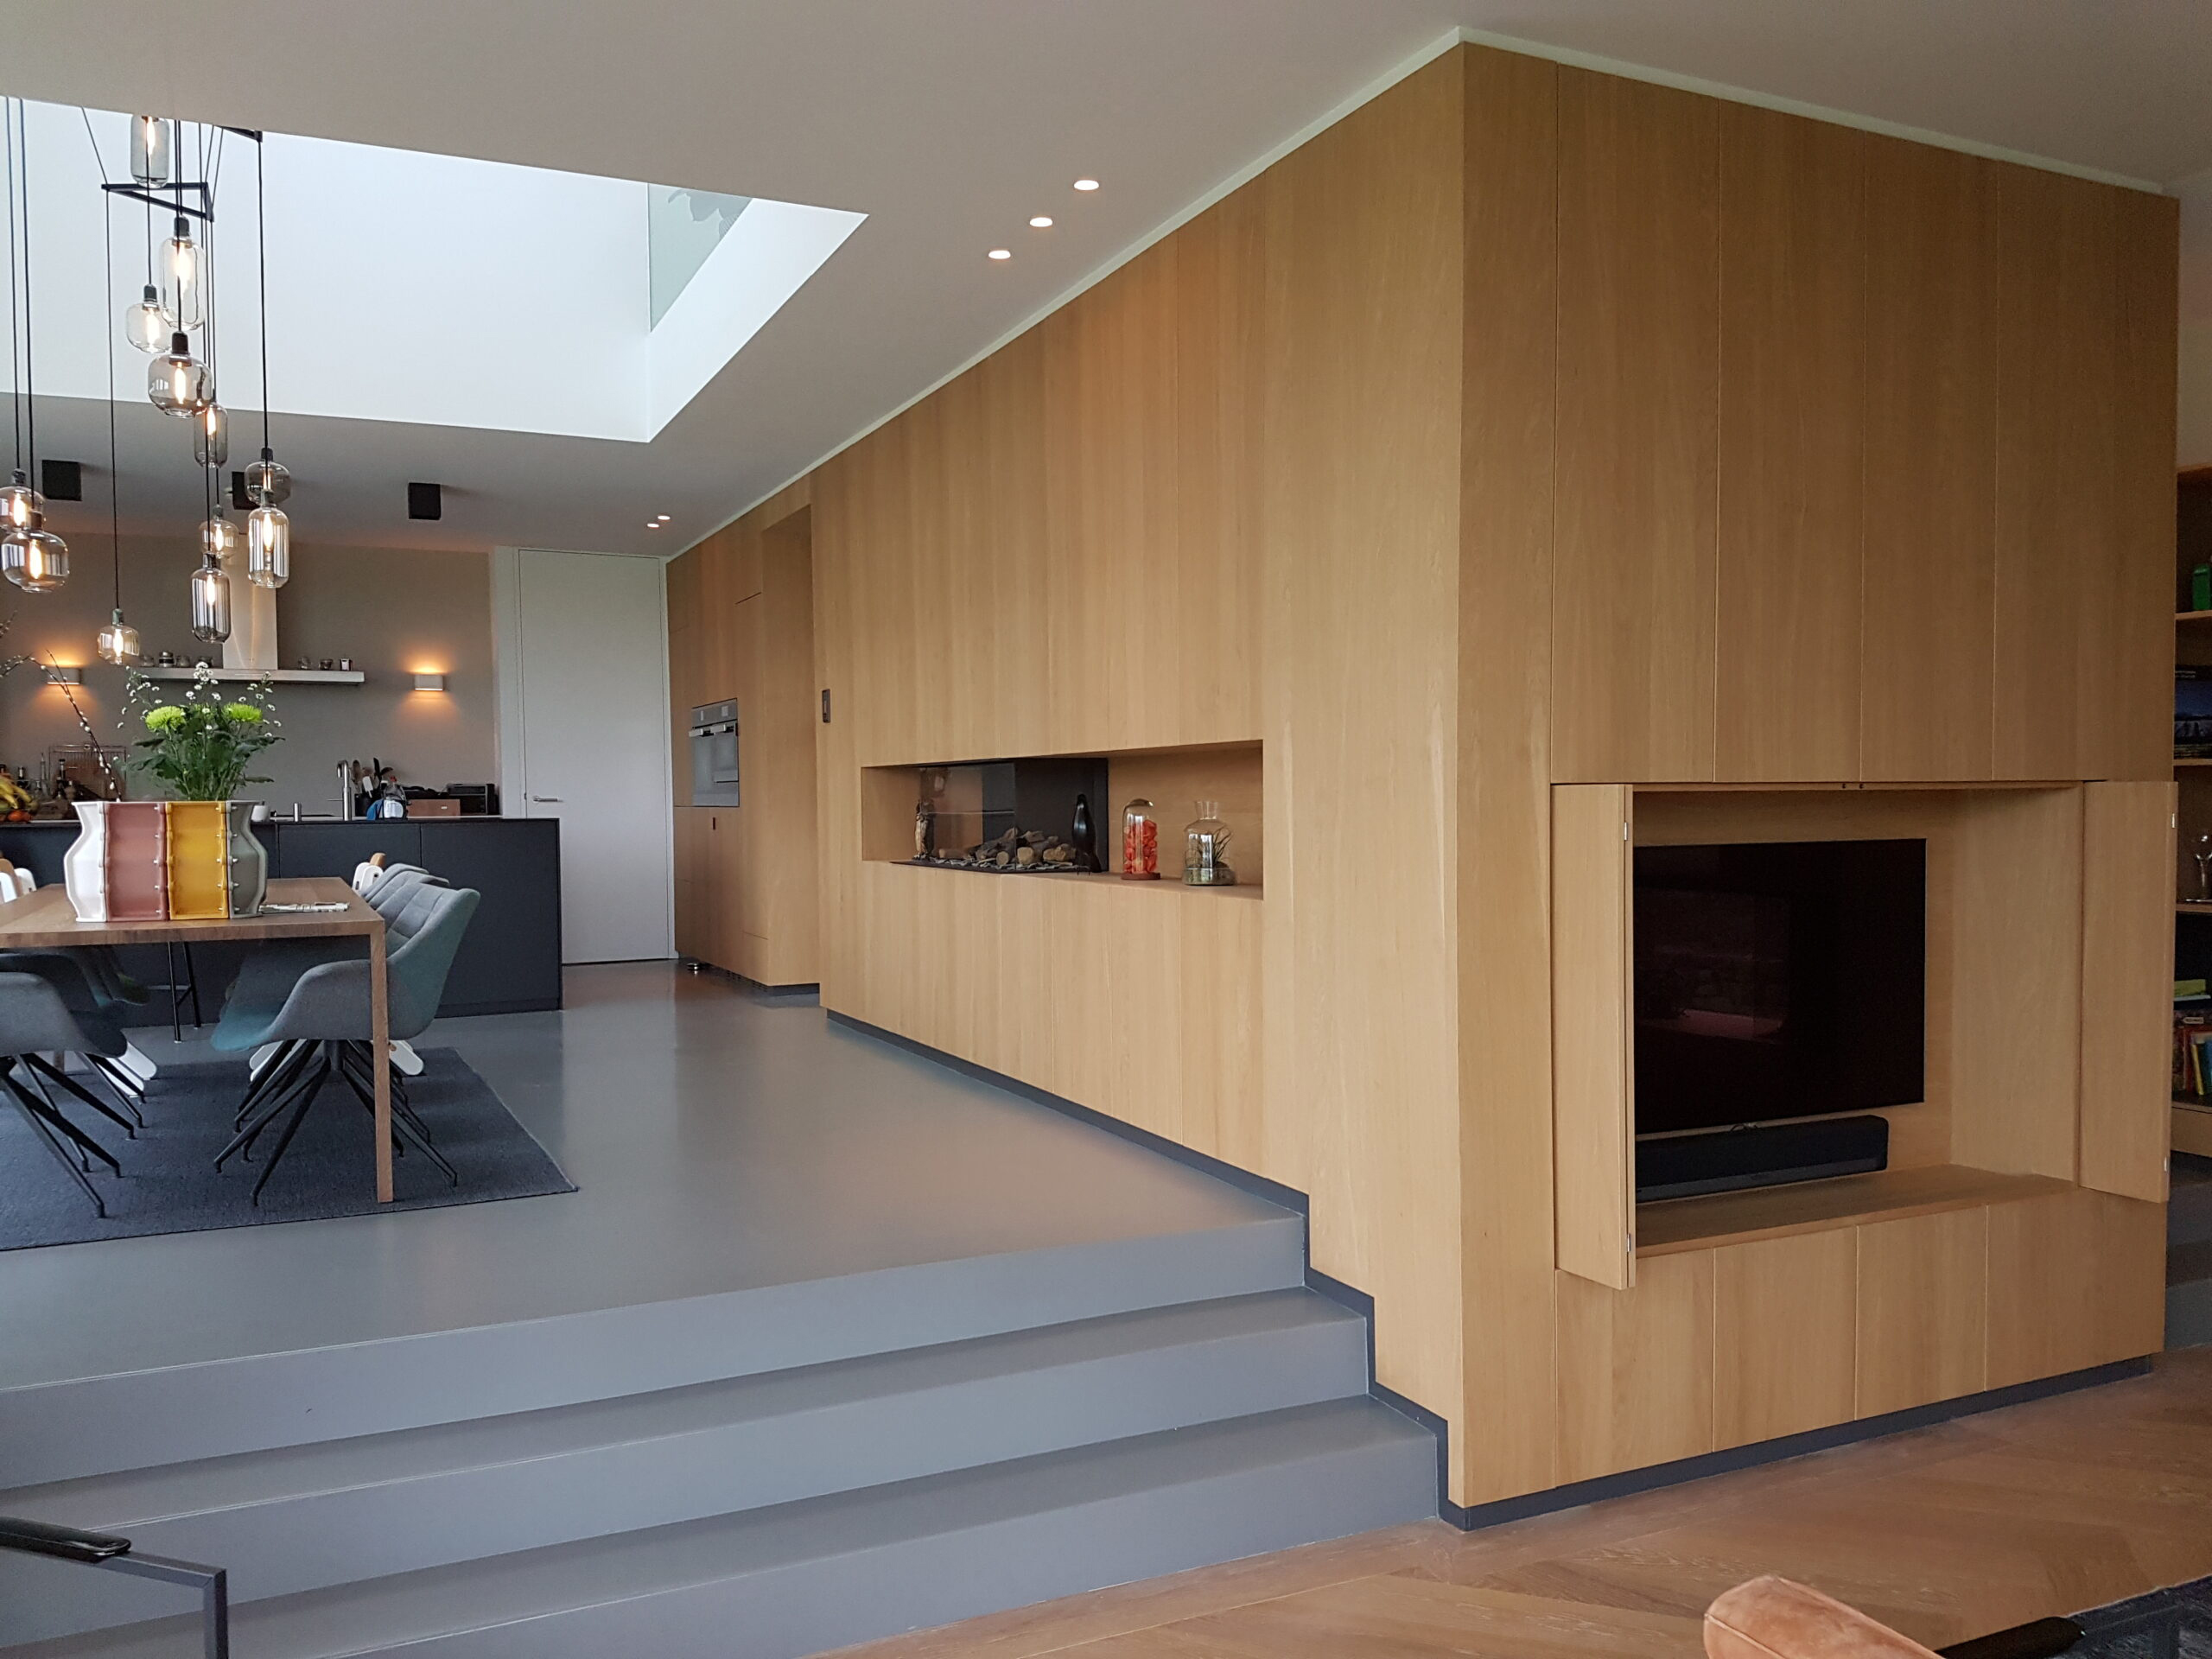 Stumpf & van Dongen - maatwerk keukens - maatwerk kasten - maatwerk meubels - maatwerk rotterdam - maatwerk interieur - meubelmaker